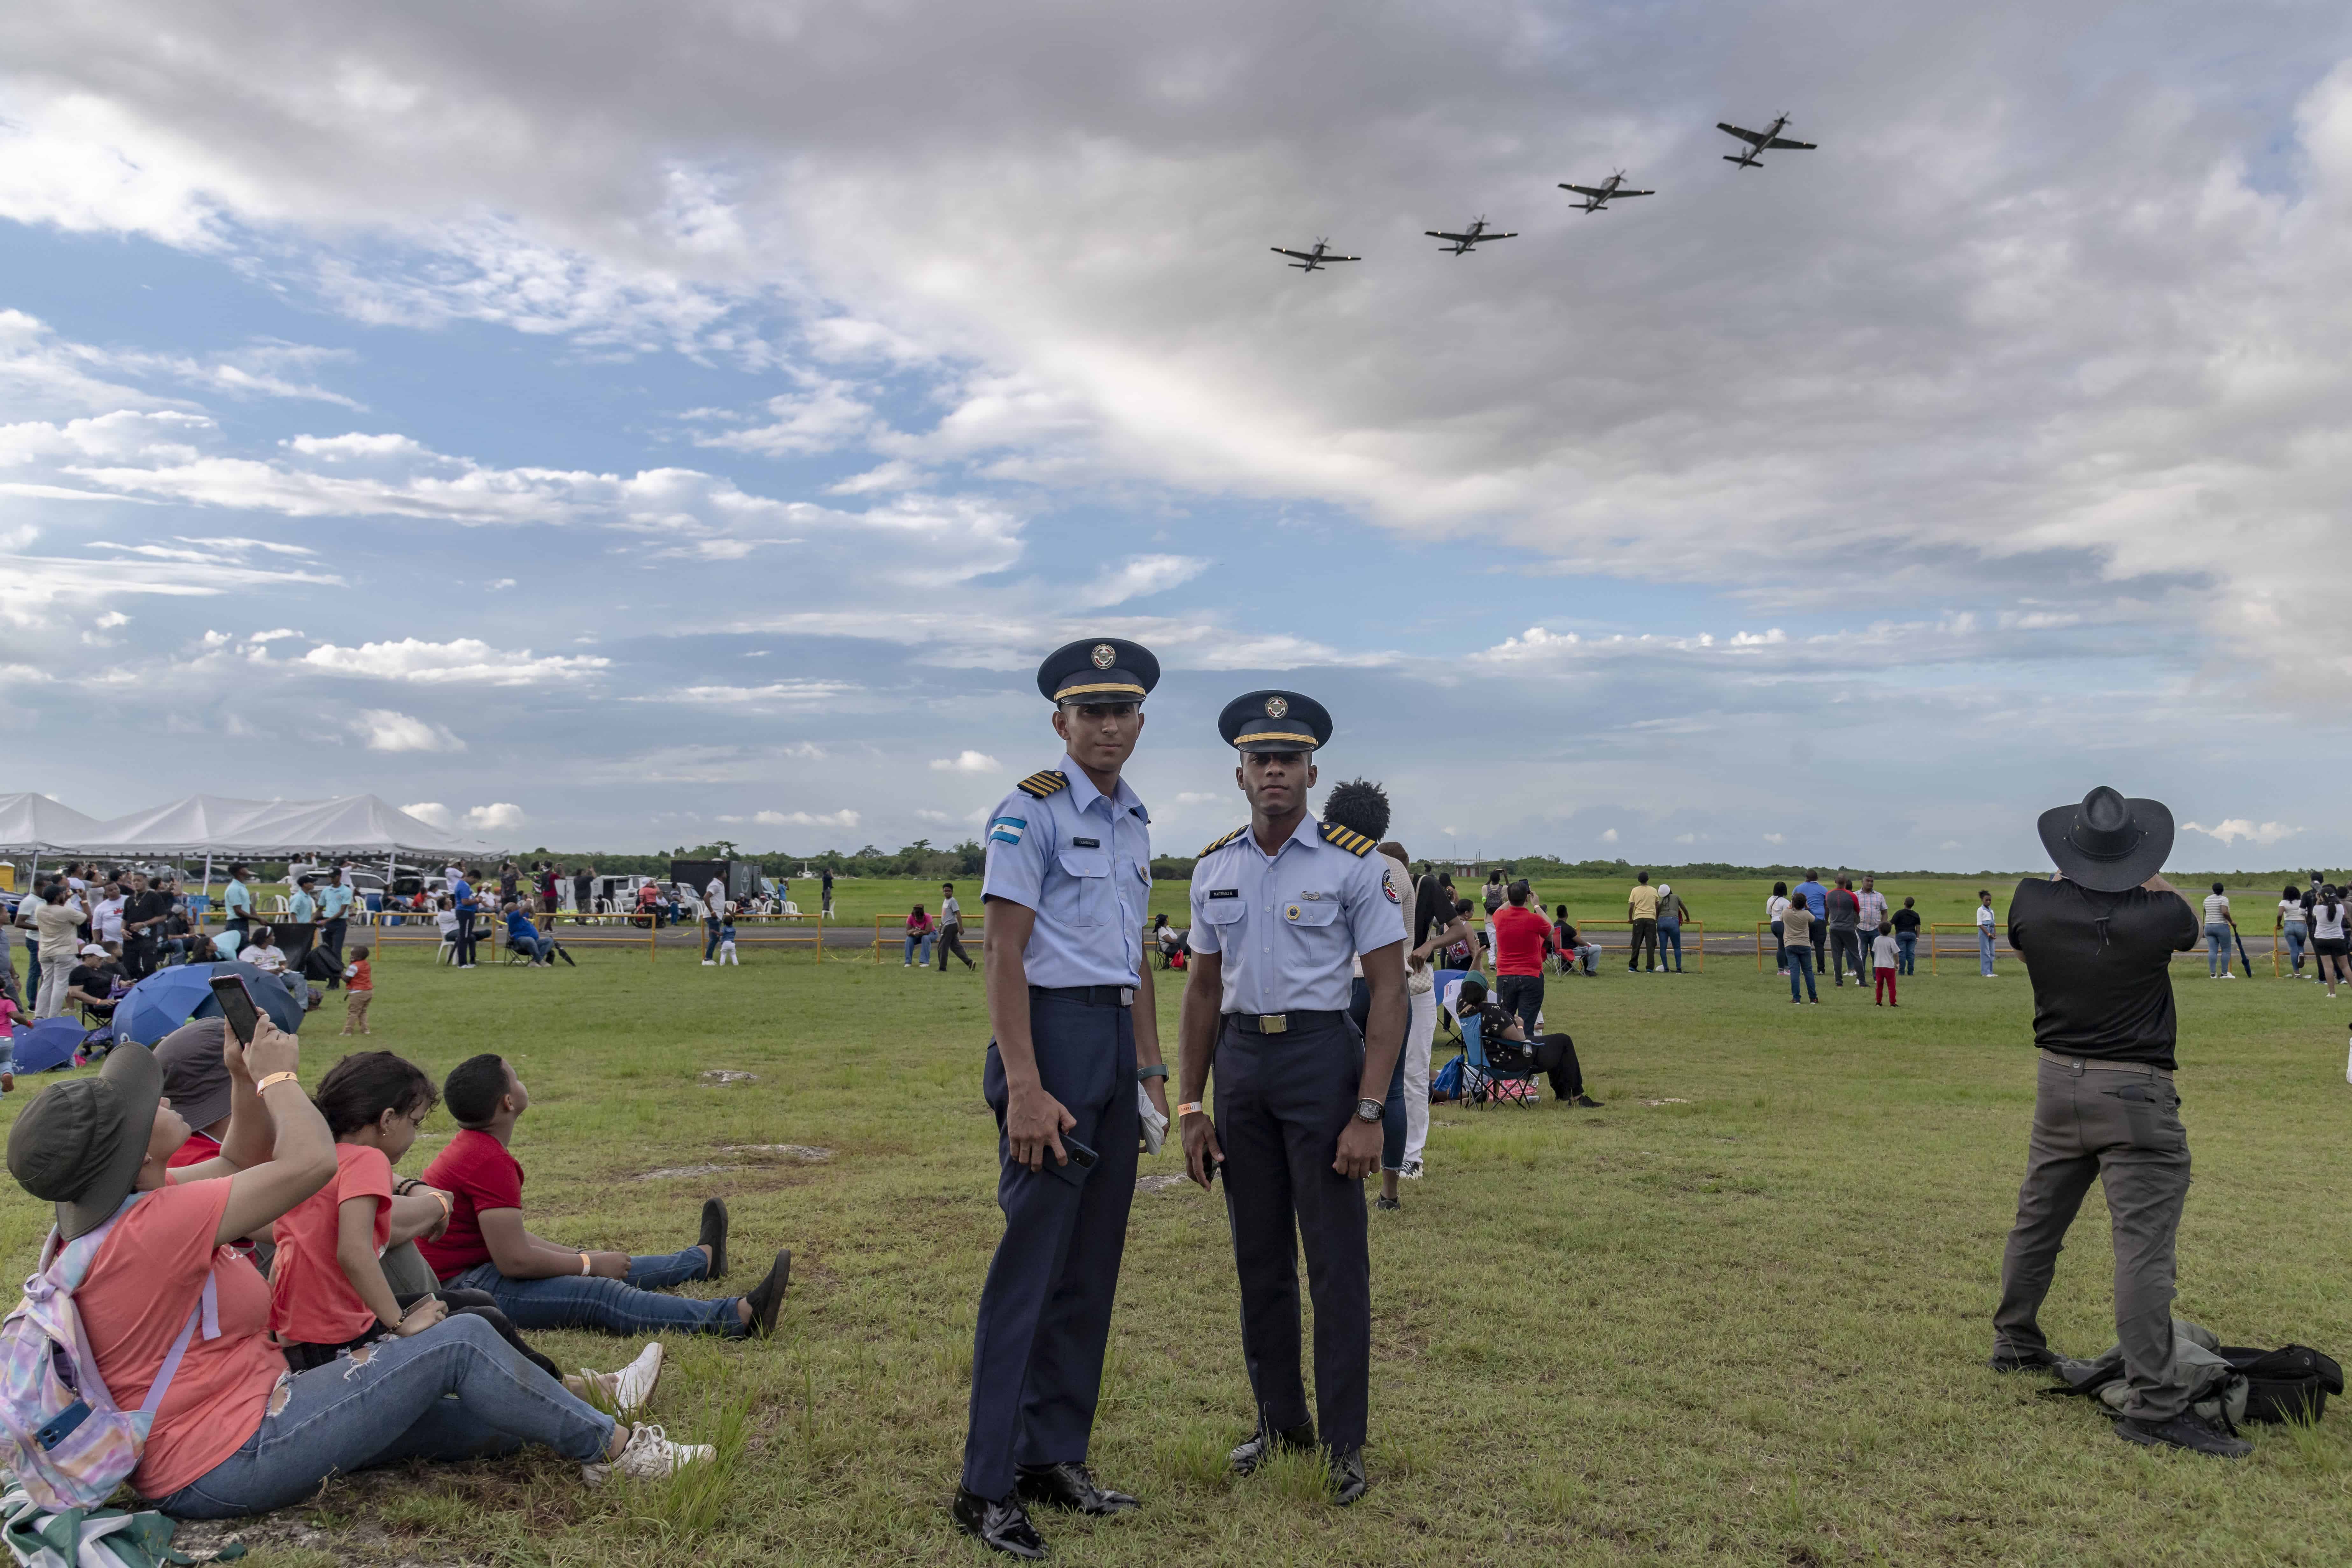 Dos cadetes de la academia posan, mientras detrás pasa una formación de aviones Super Tucano, máximo exponente de la fuerza aérea.